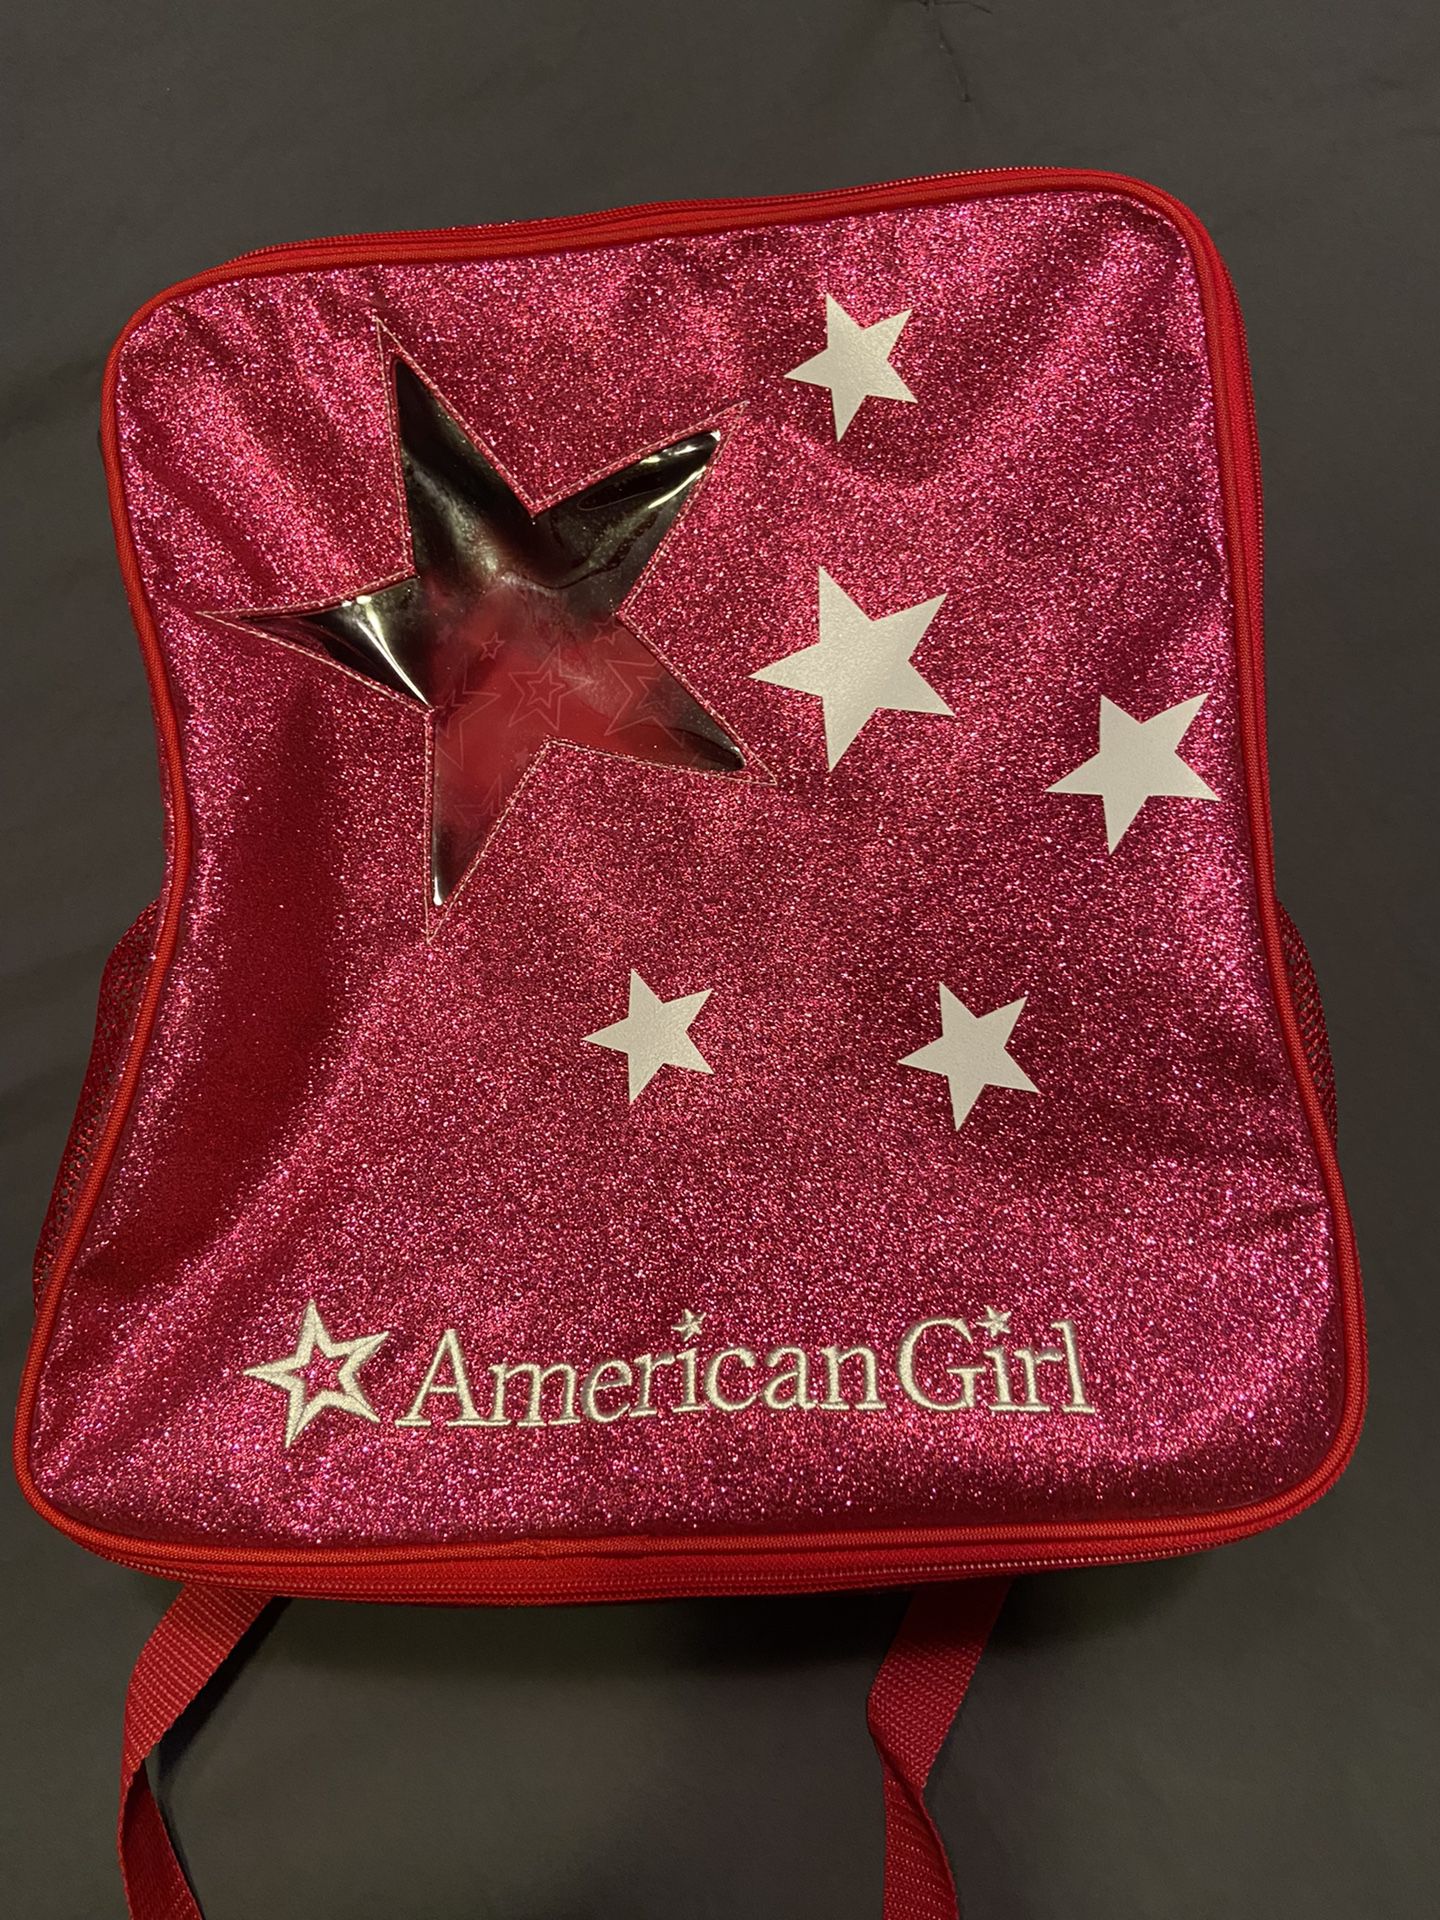 American Girl Carrying Bag